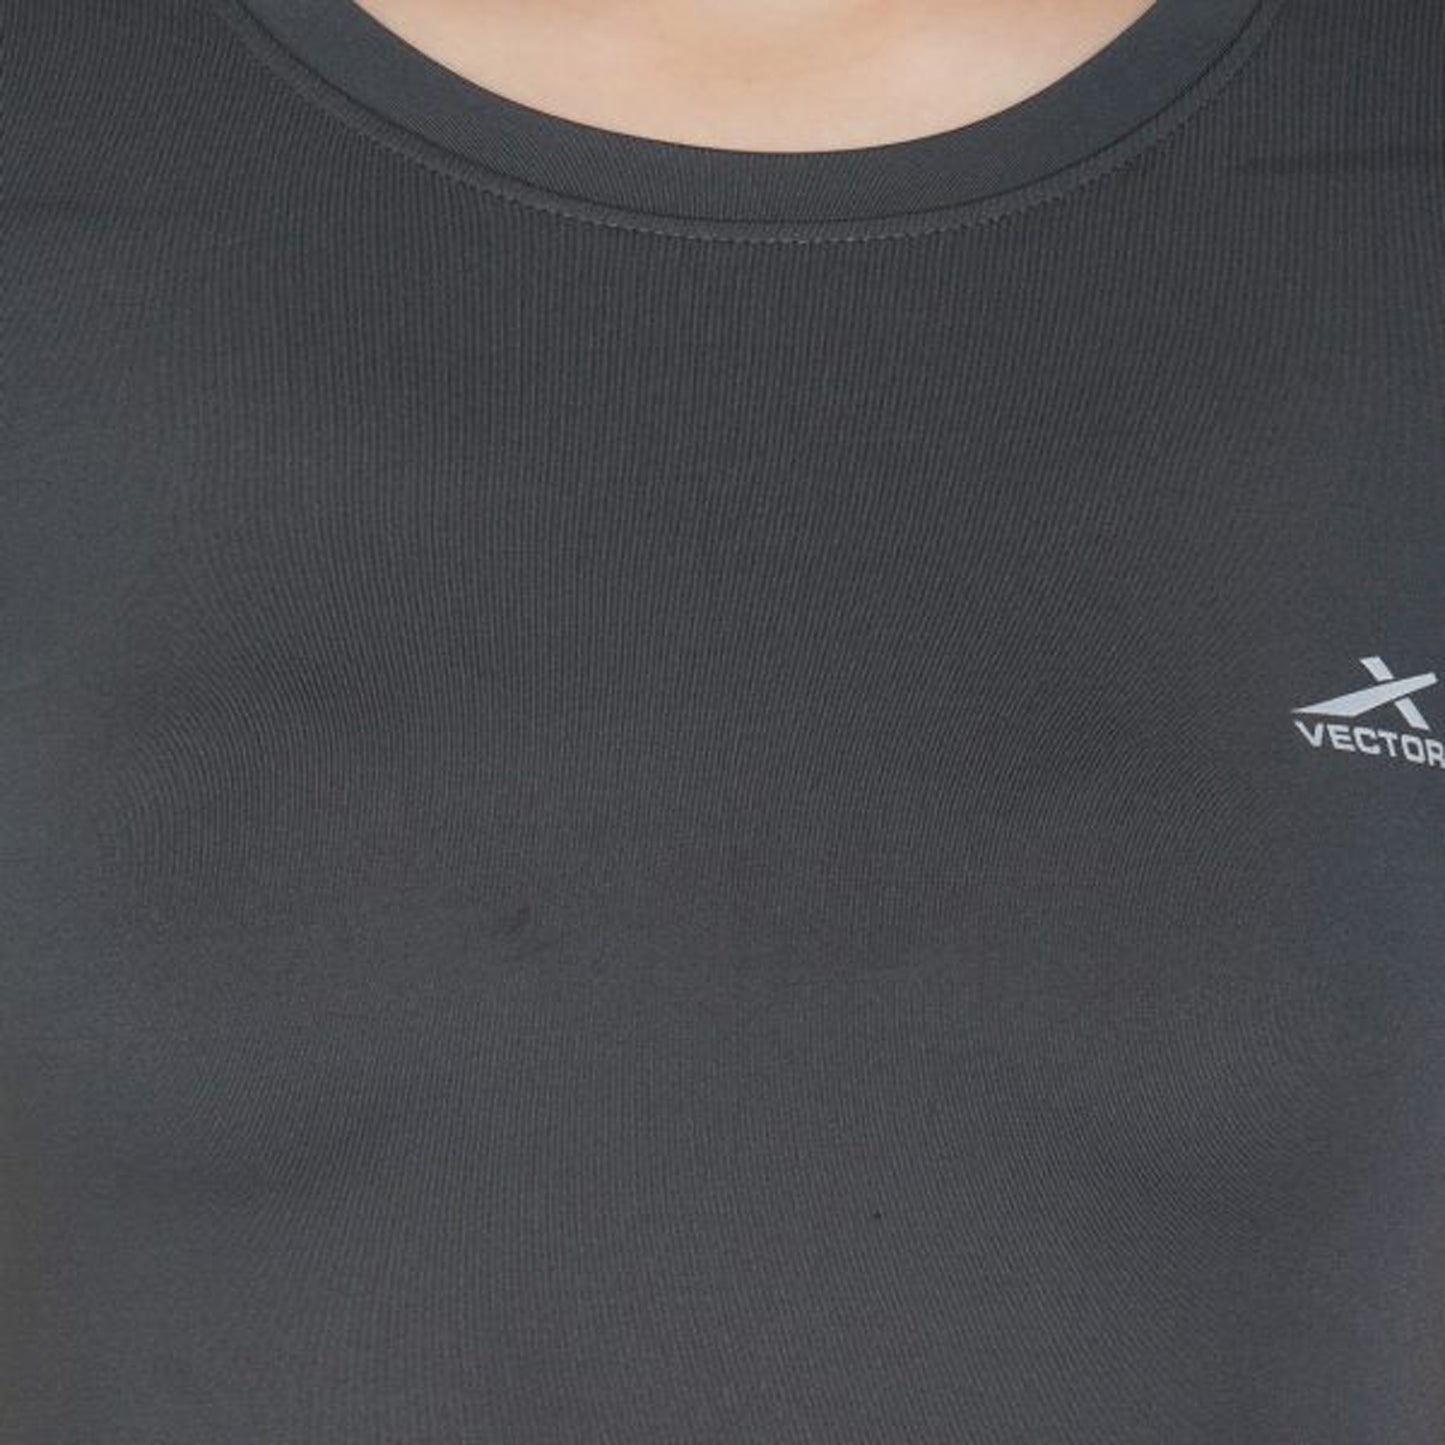 Vector X VTDF-018 Women's Round Neck T-Shirt , Grey - Best Price online Prokicksports.com